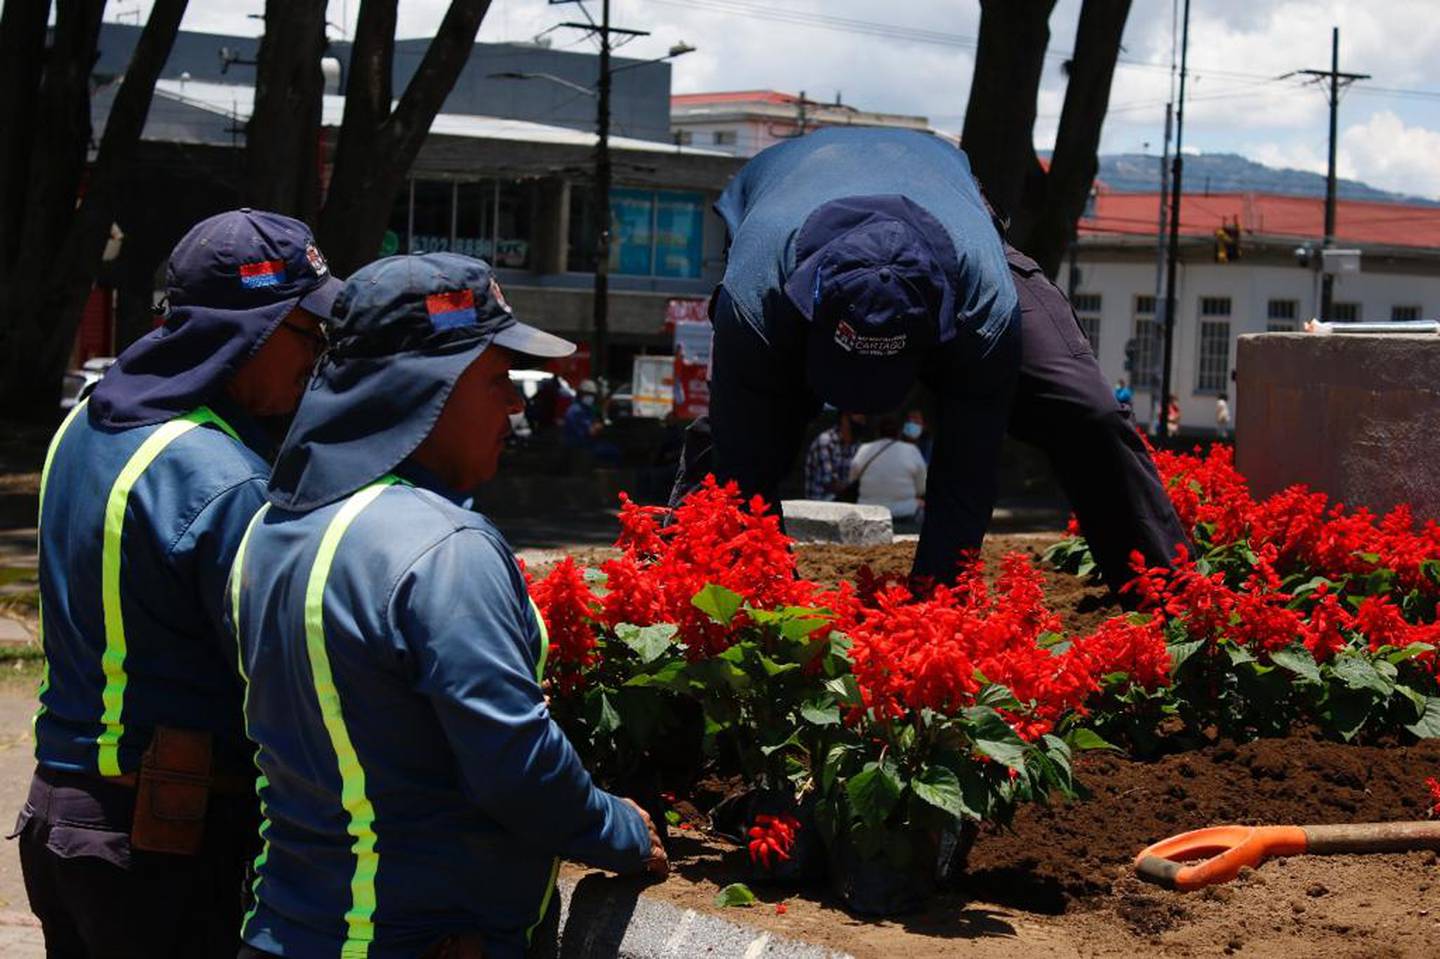 El monumento al Bicentenario de nuestra Independencia que se llama “Costa Rica Victoriosa” y que se puso en la Plaza Mayor de Cartago se quedó sin la fuente original que lo adornaba y en su lugar ahora tiene un jardín de flores